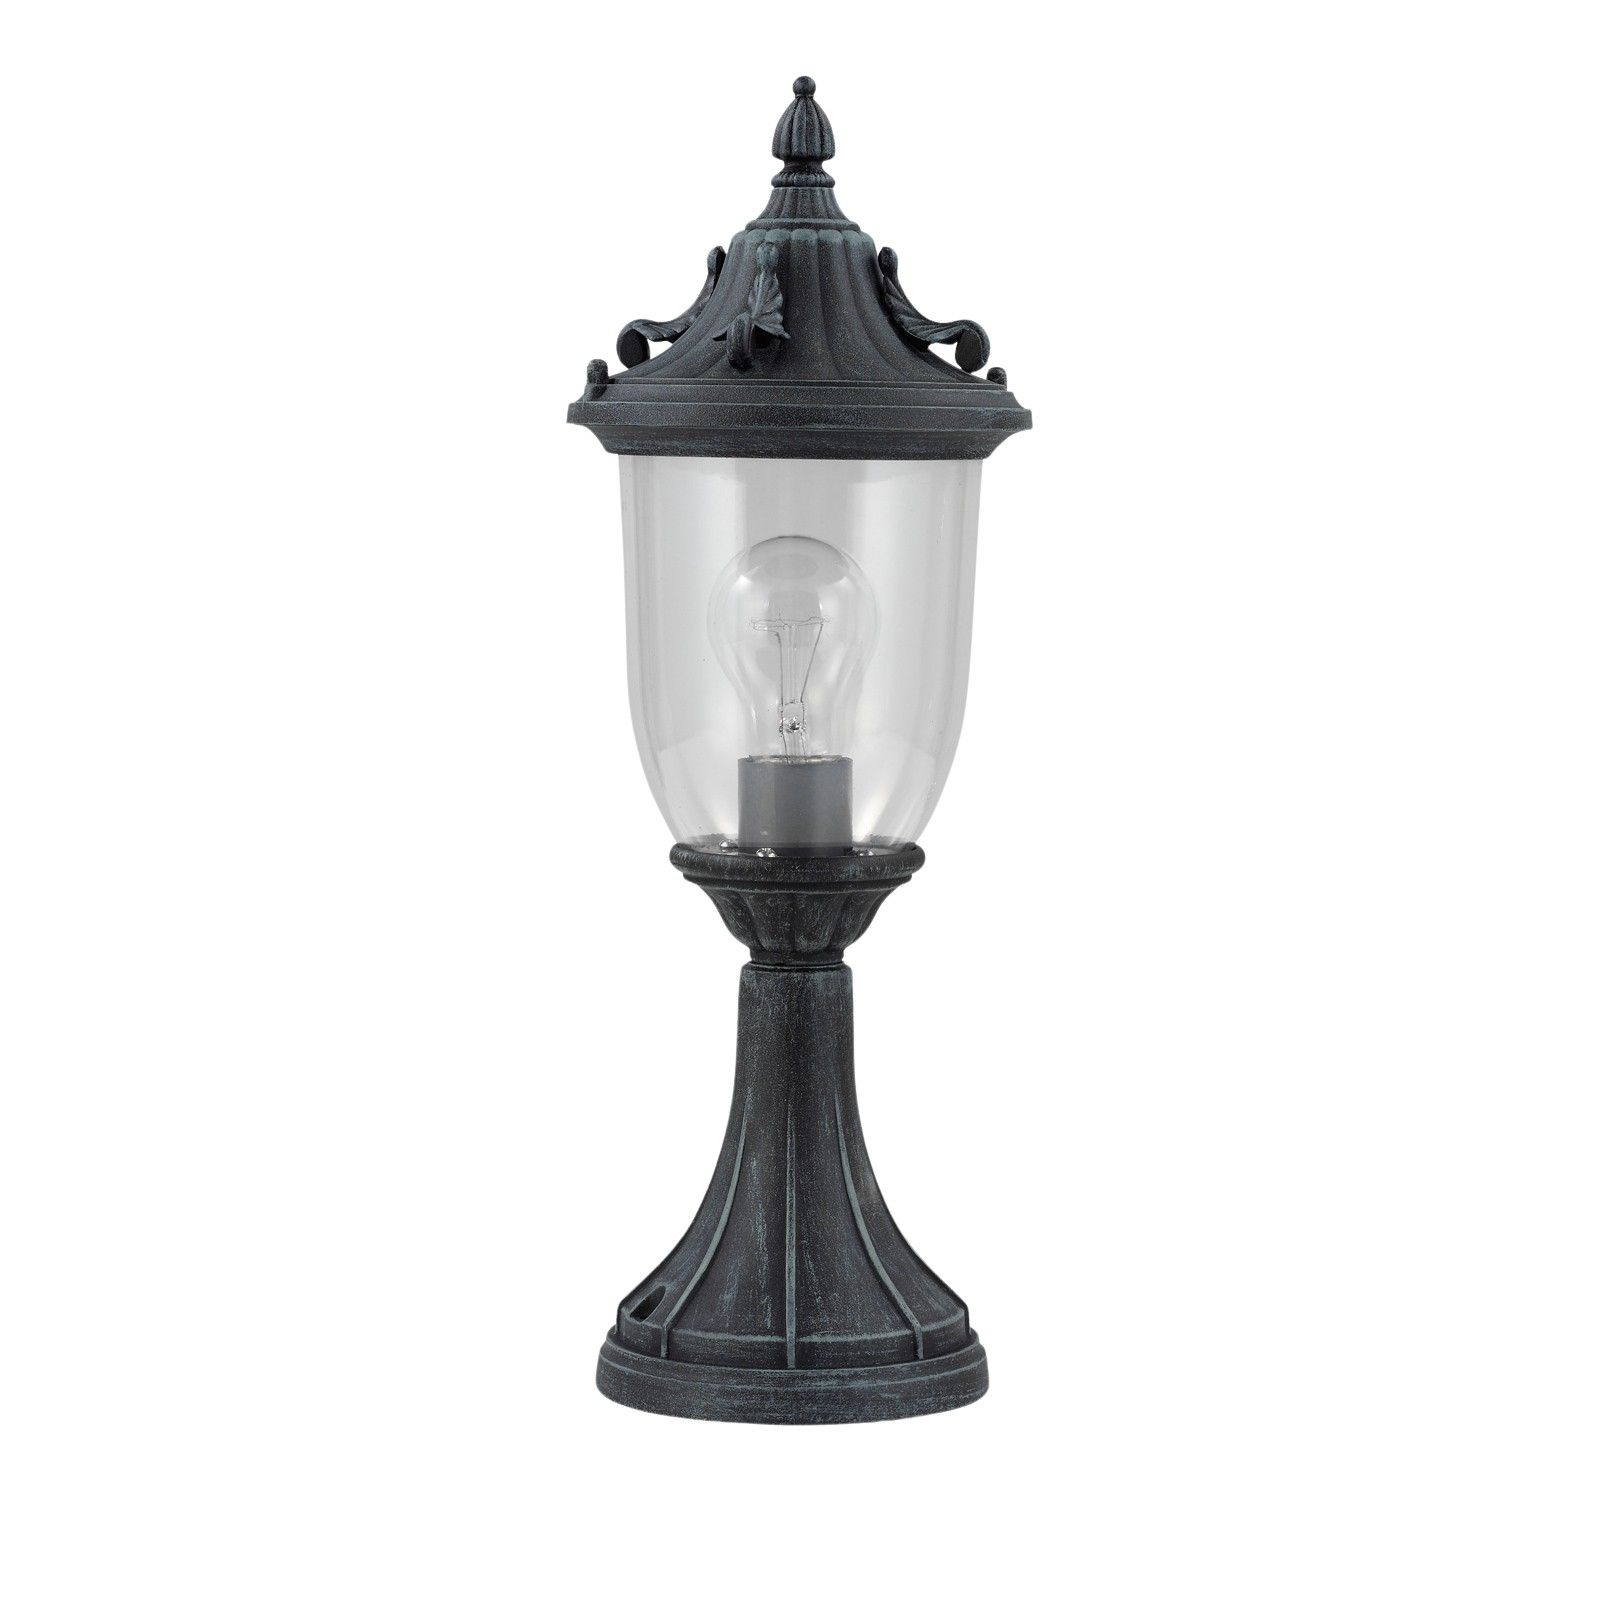 Elkstone Pedestal lantern